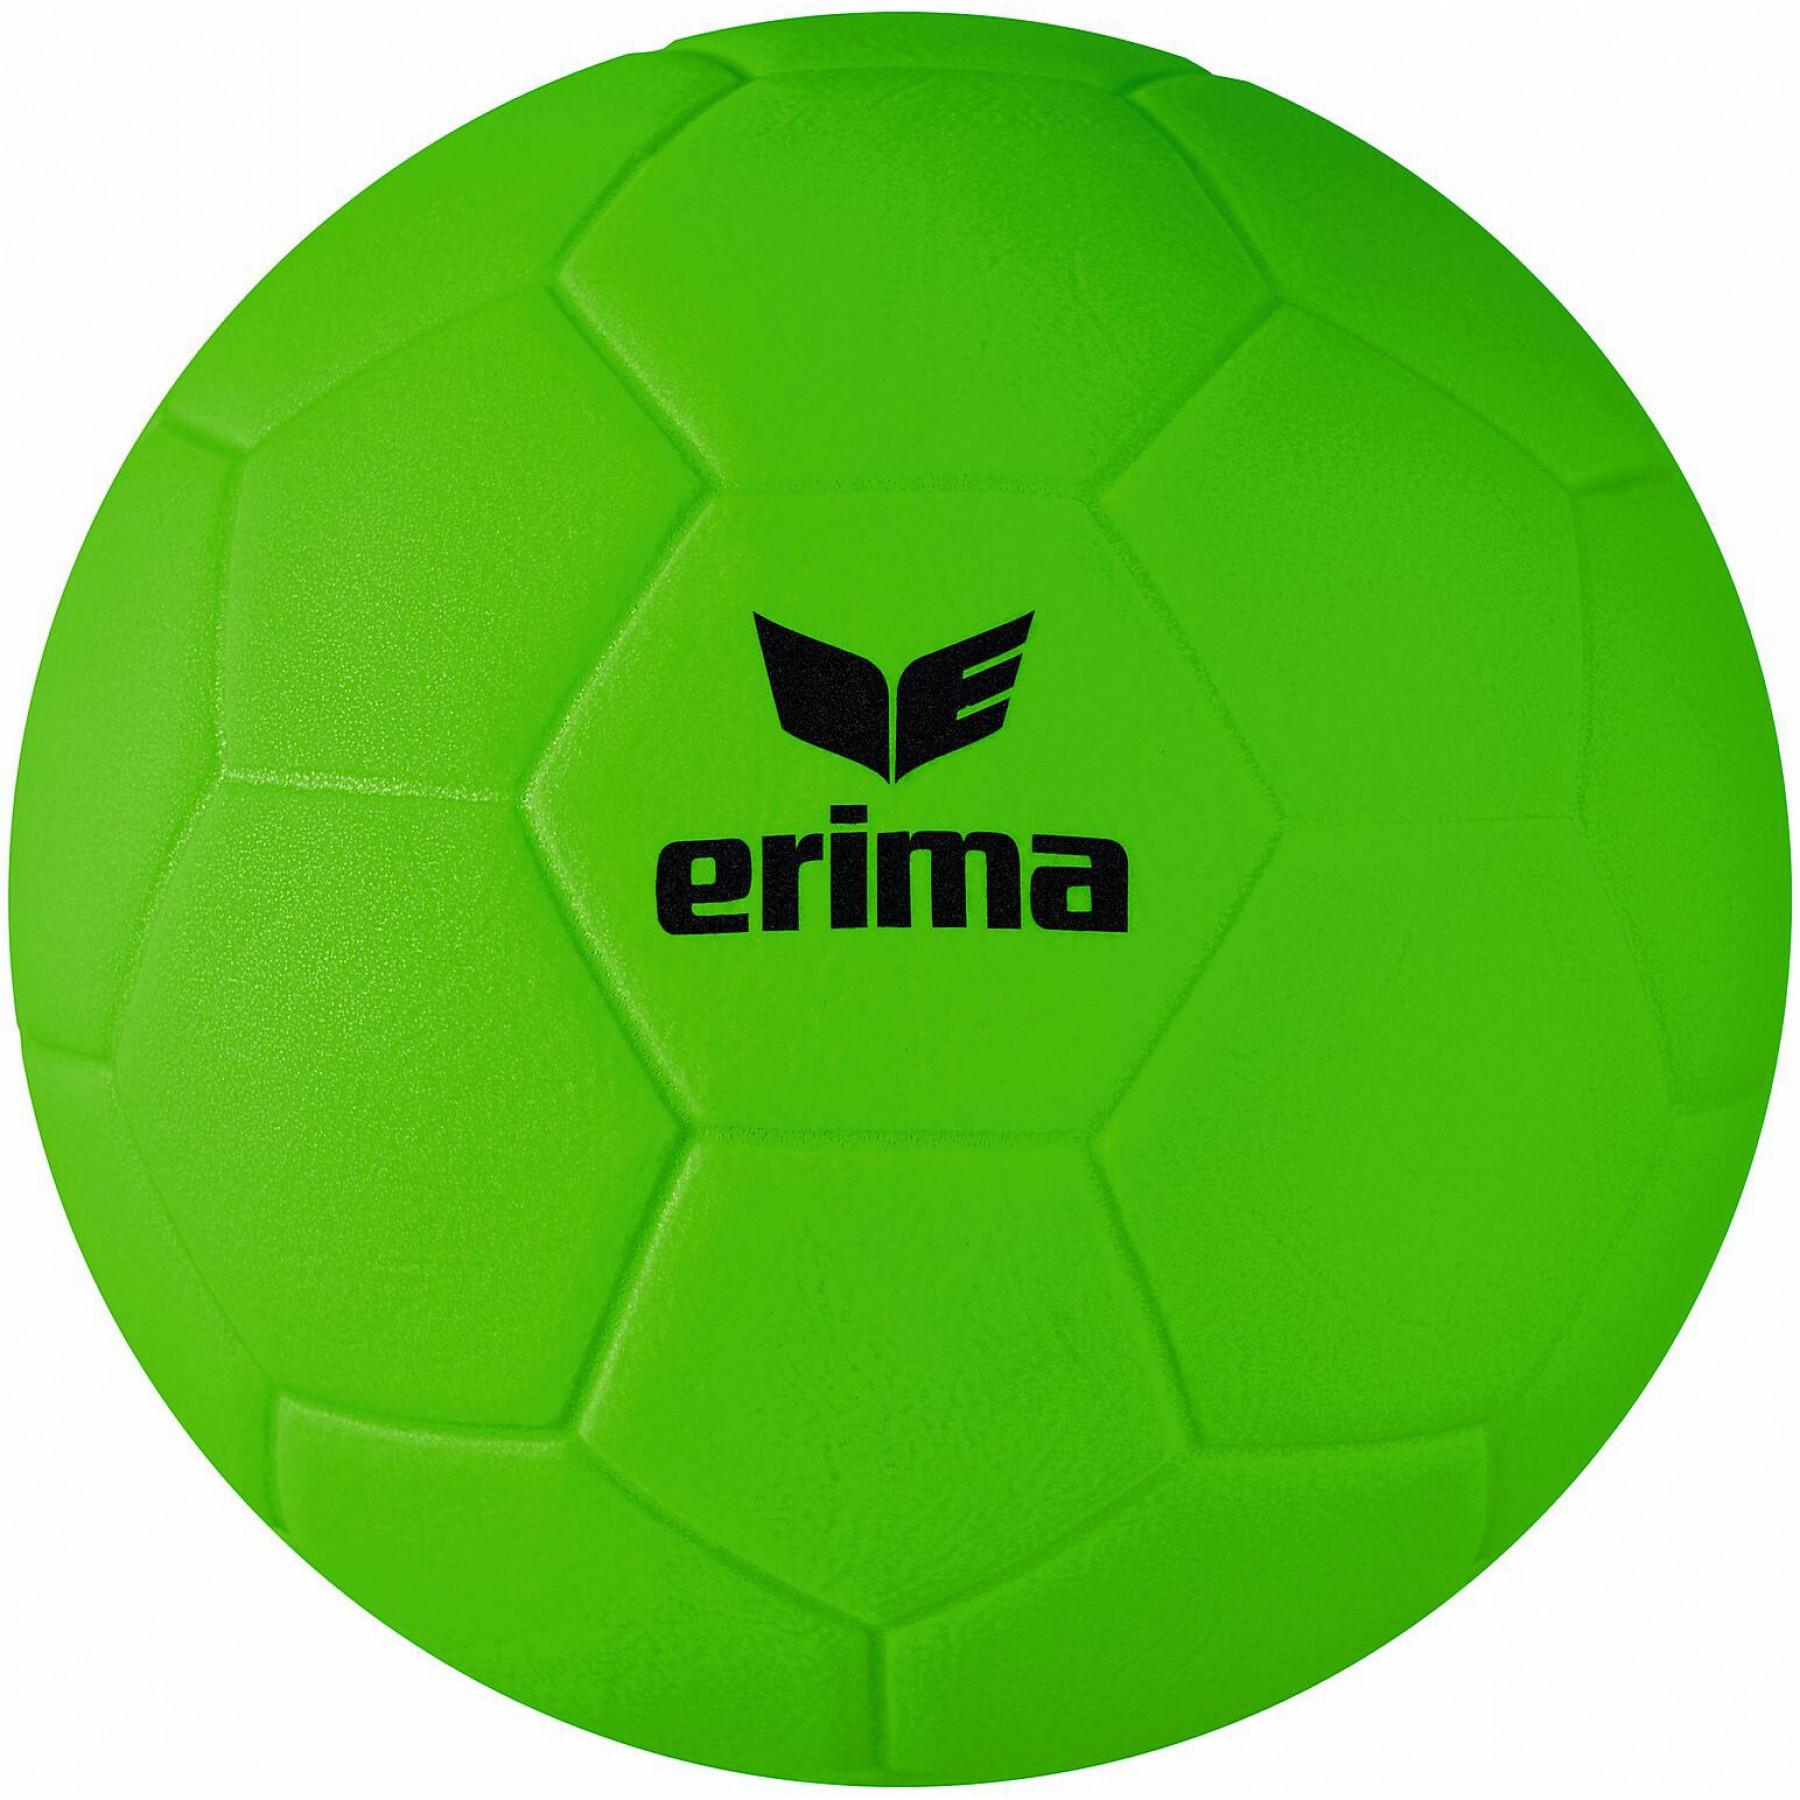 Satz von 10 Beach-Handballbällen für Jugendliche Erima